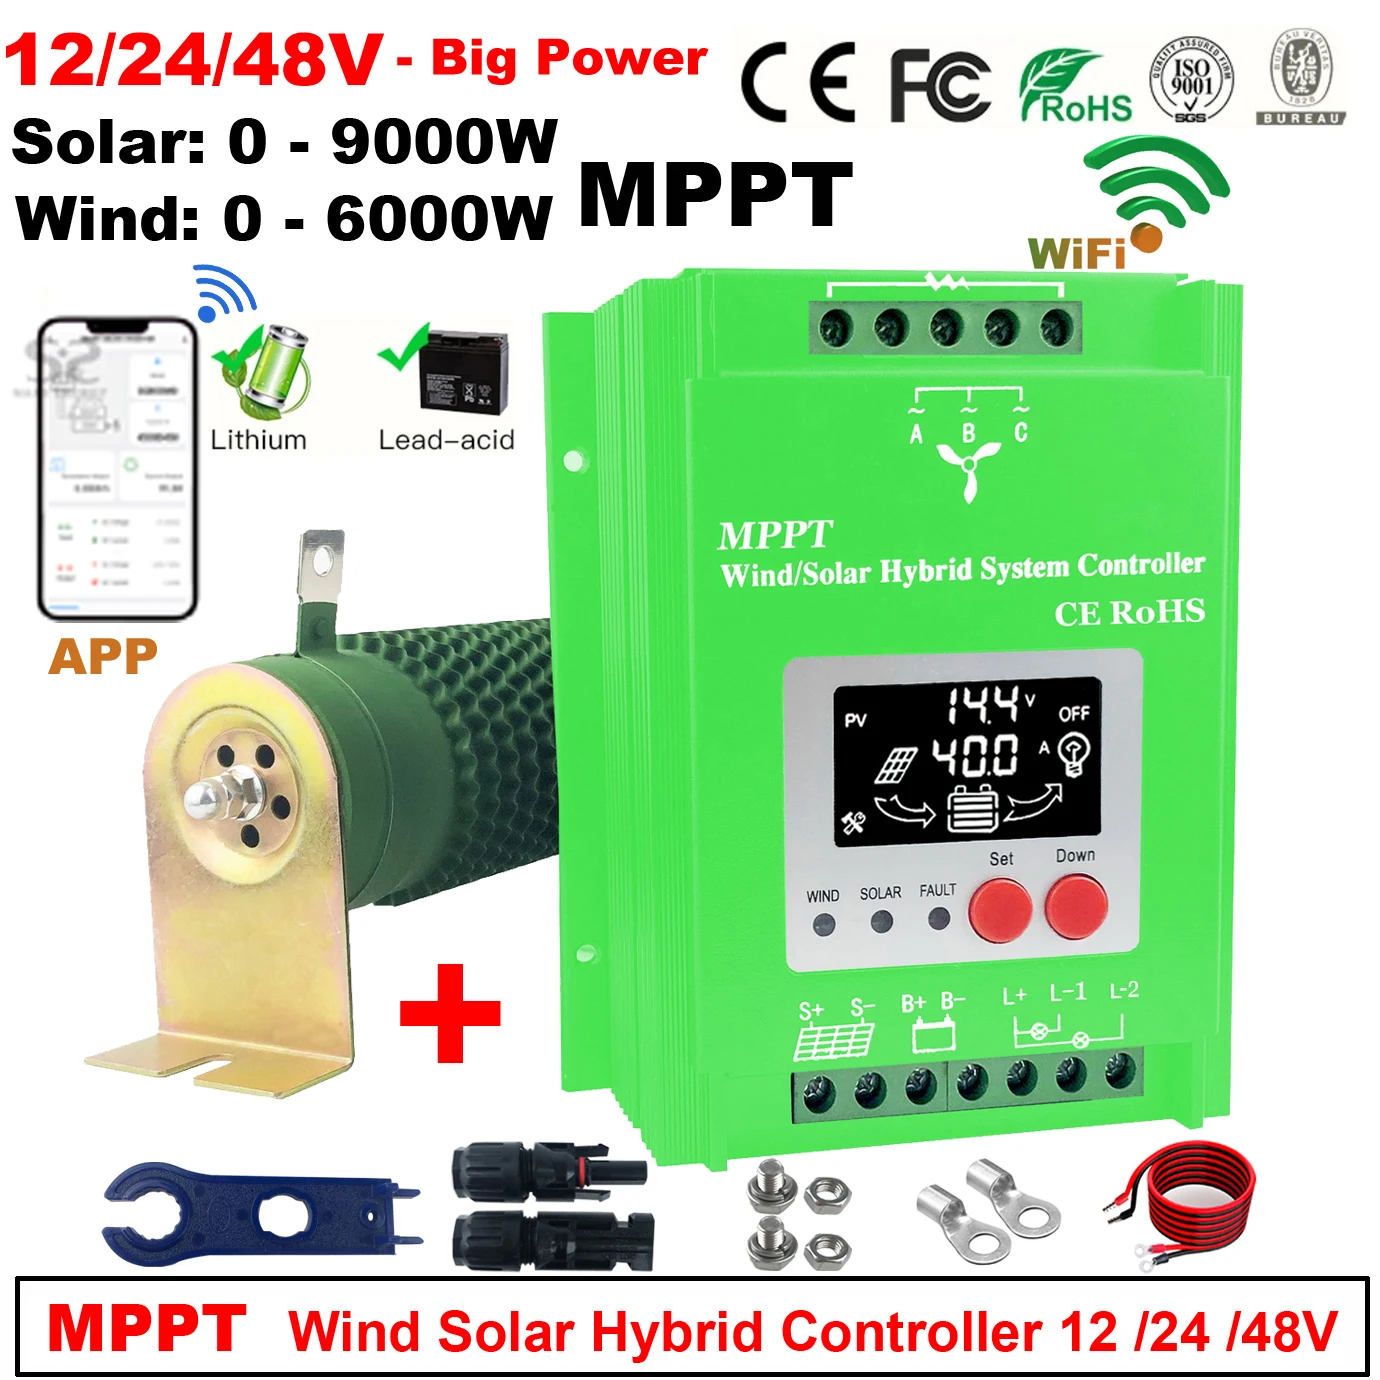 

Гибридный контроллер заряда от солнечного ветра, 4000-15000 Вт, 6 кВт, система питания MPPT, регулятор солнечной энергии для литиевых свинцово-кислотных батарей 12 В, 24 В, 48 В